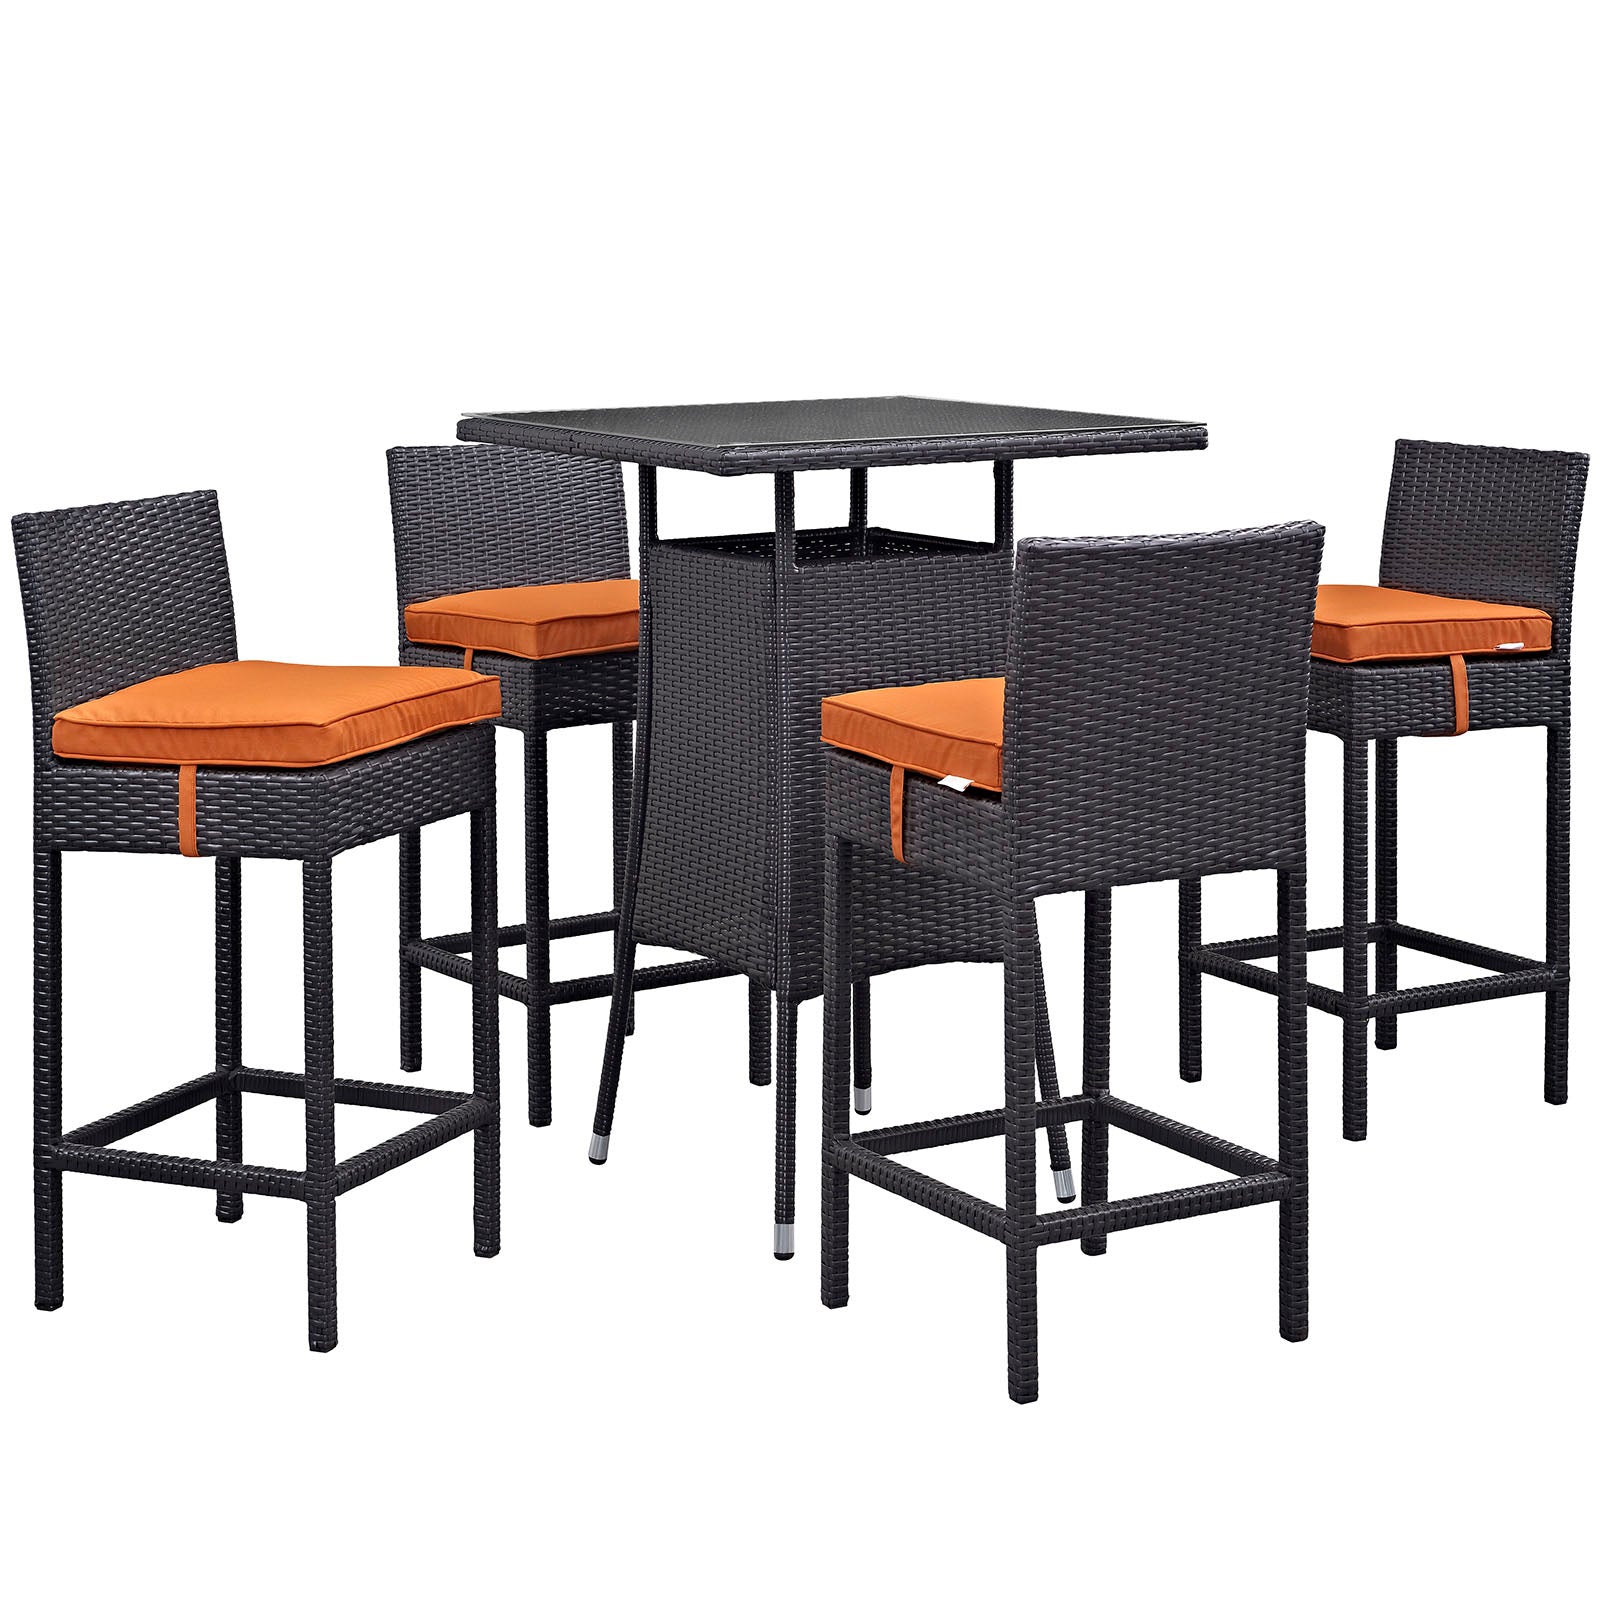 Modway Outdoor Dining Sets - Convene 5 Piece Outdoor Patio Pub Set Espresso Orange